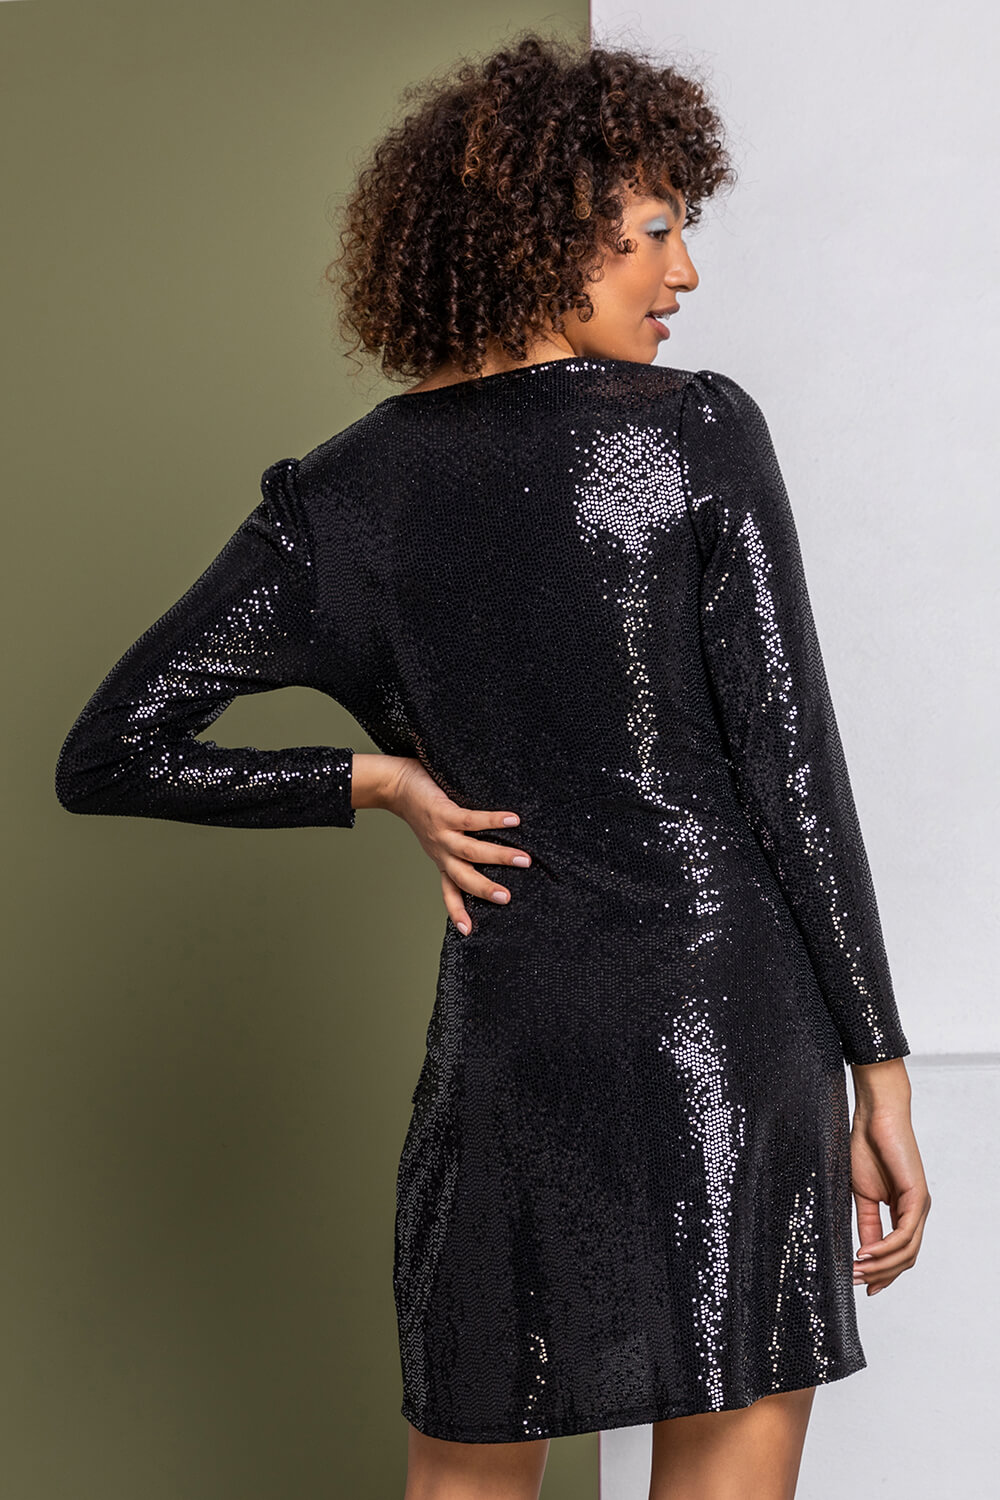 Black Sparkle Embellished Ruched Wrap Dress, Image 2 of 5